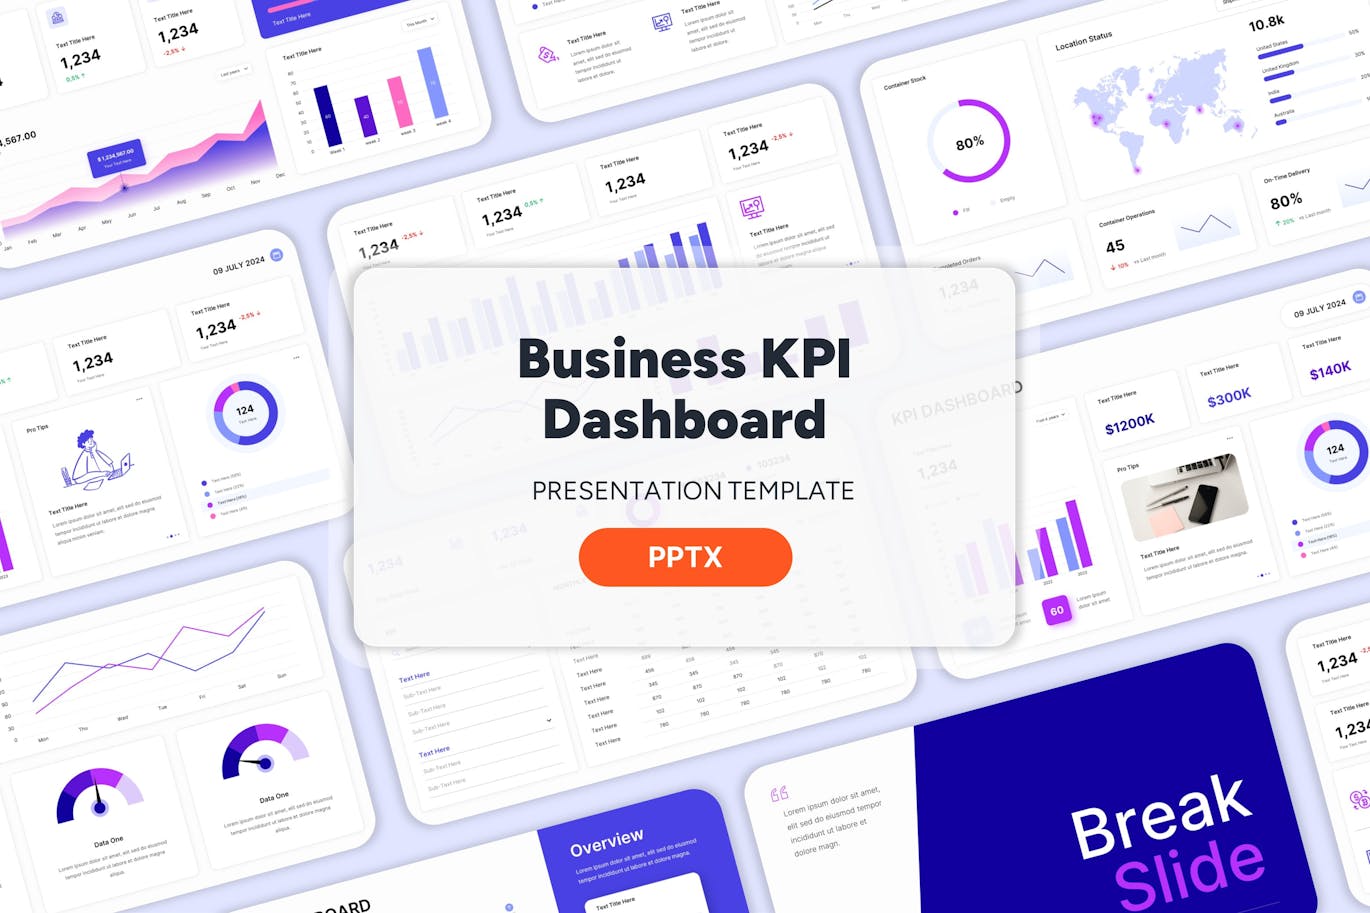 业务 KPI 仪表板 -PPT模版 (PPTX)